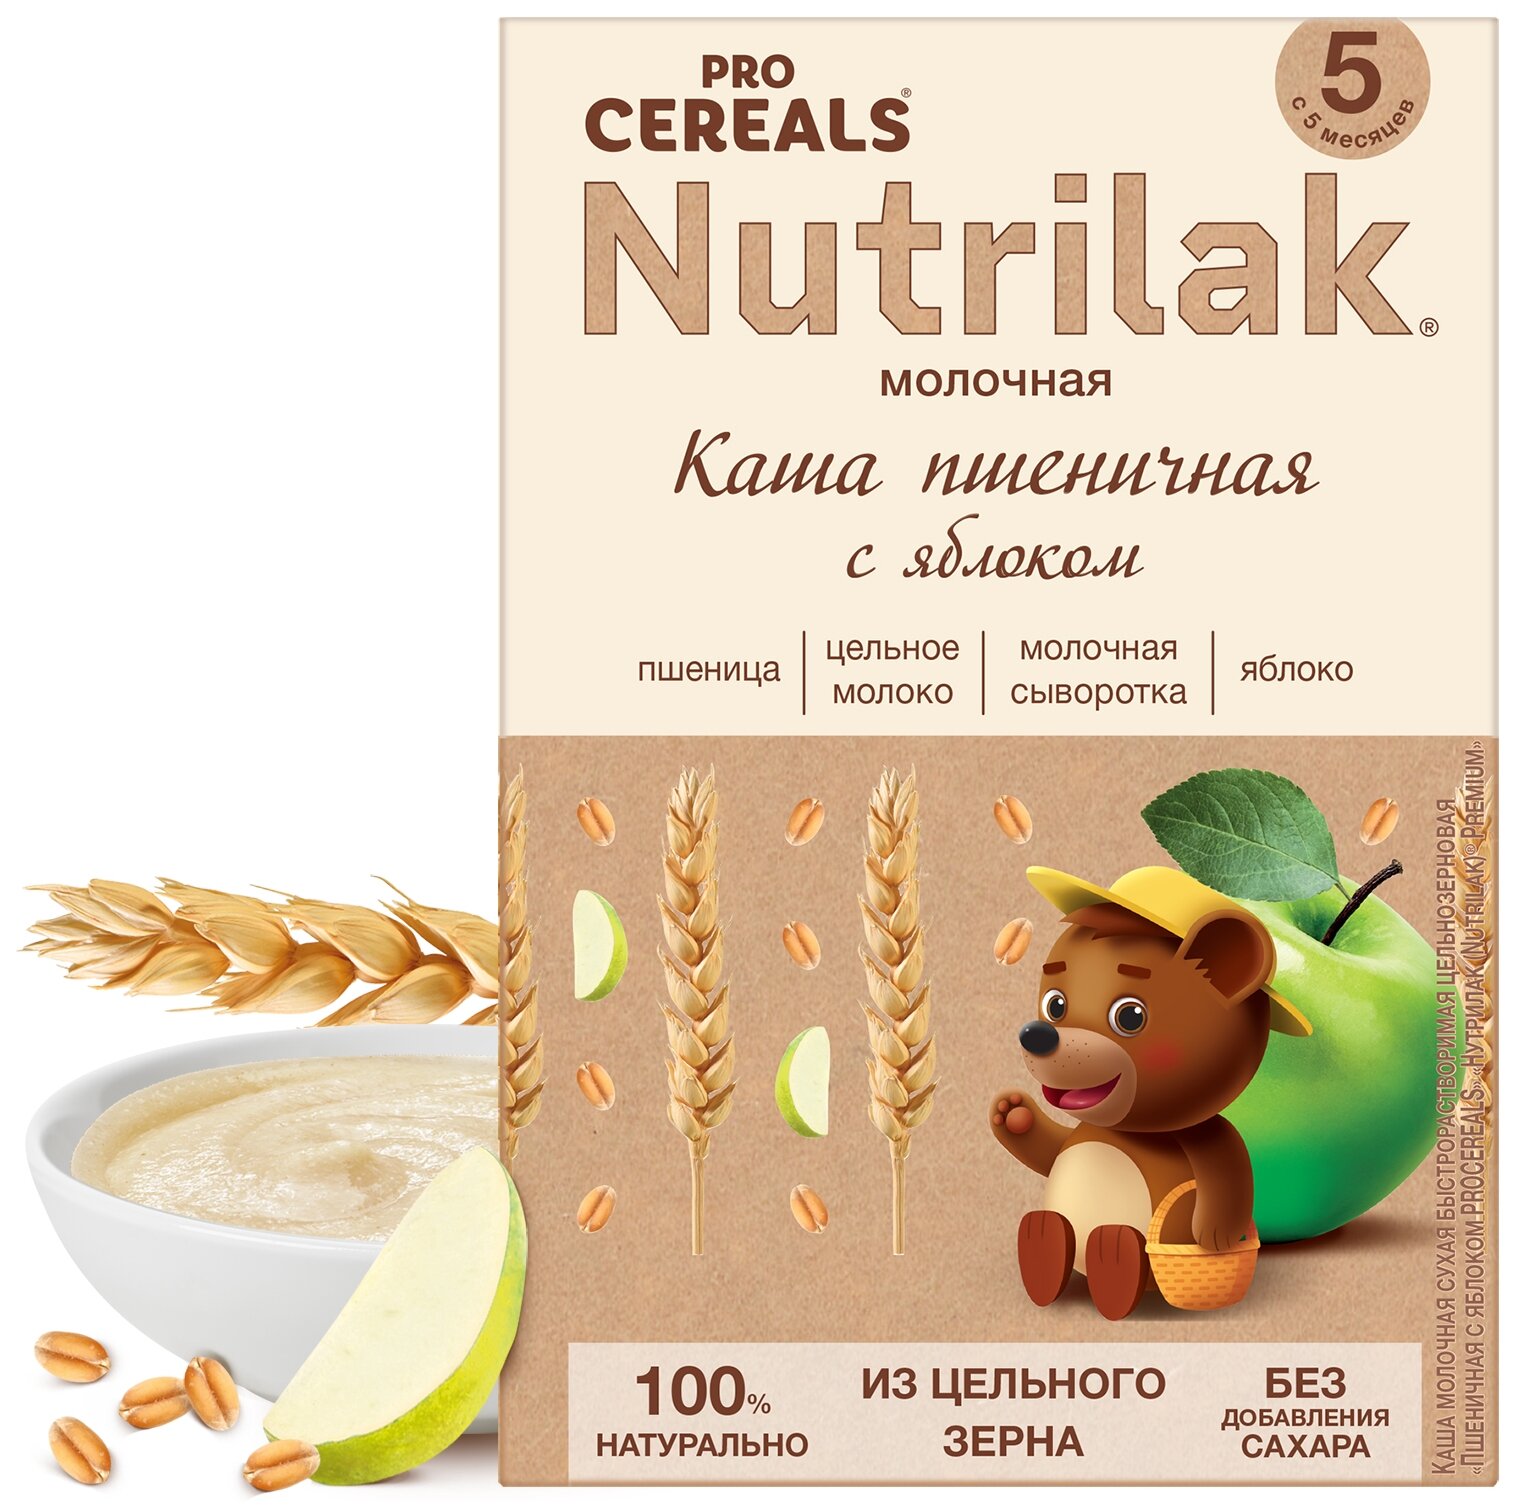 Каша пшеничная с яблоком Nutrilak Premium Pro Cereals цельнозерновая молочная, 200гр - фото №1